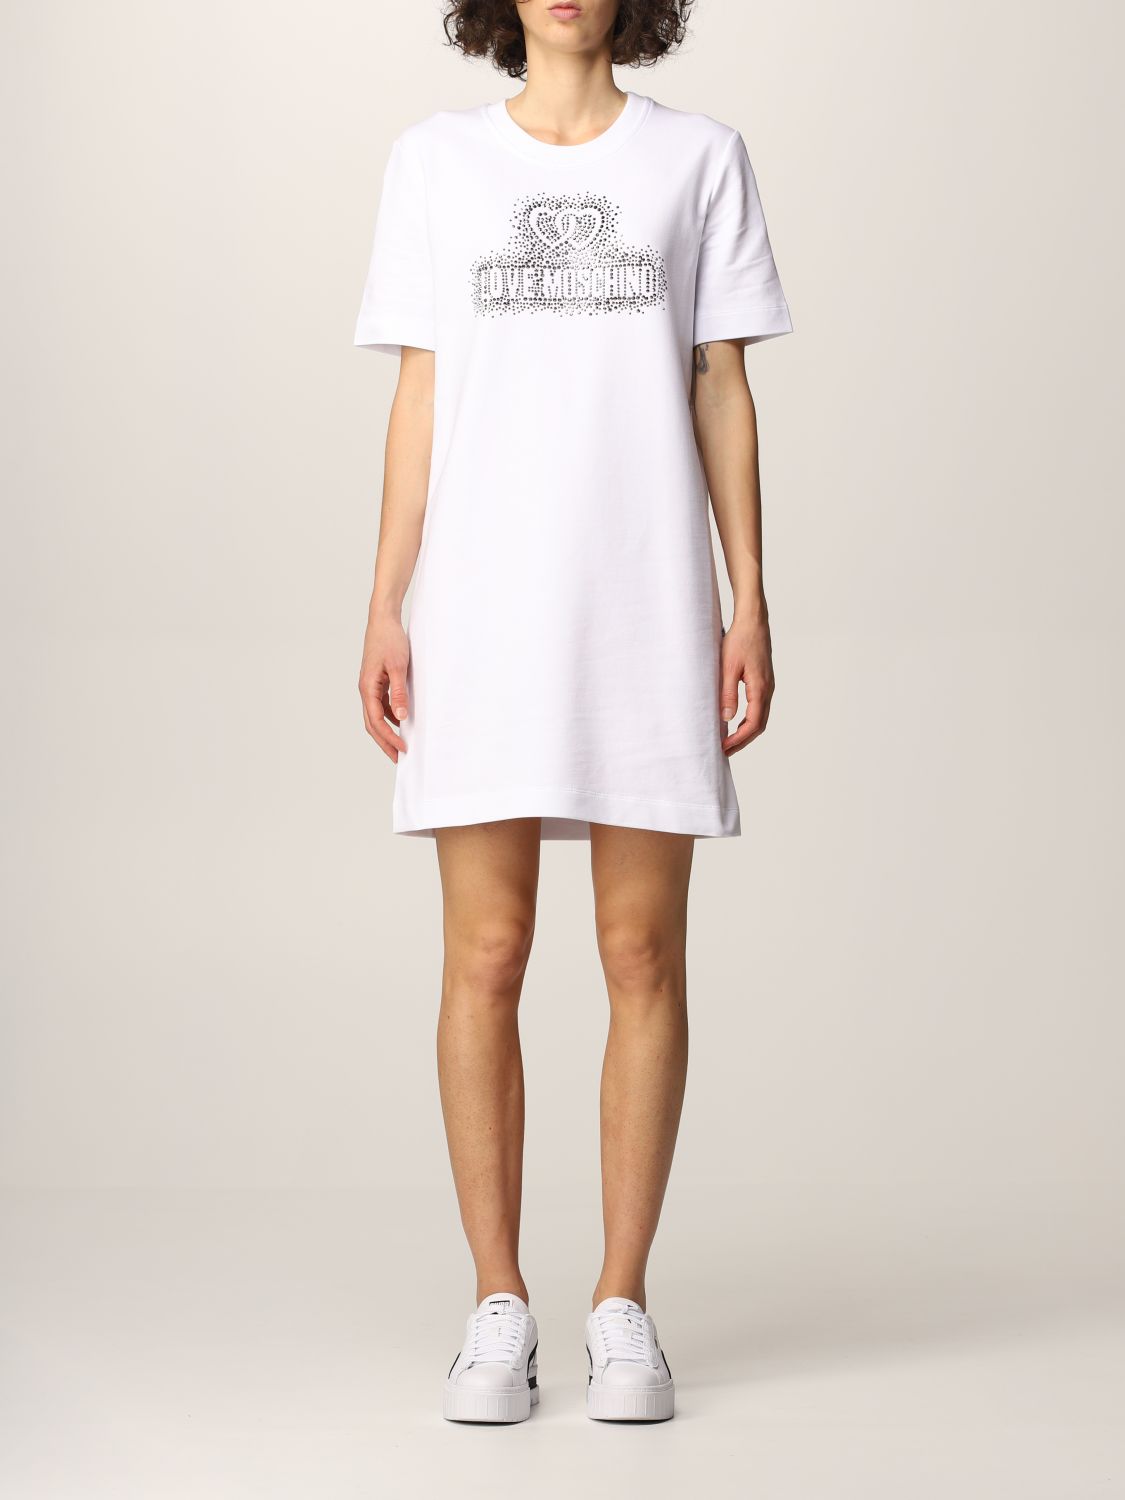 LOVE MOSCHINO: t-shirt dress with rhinestone logo | Dress Love Moschino ...